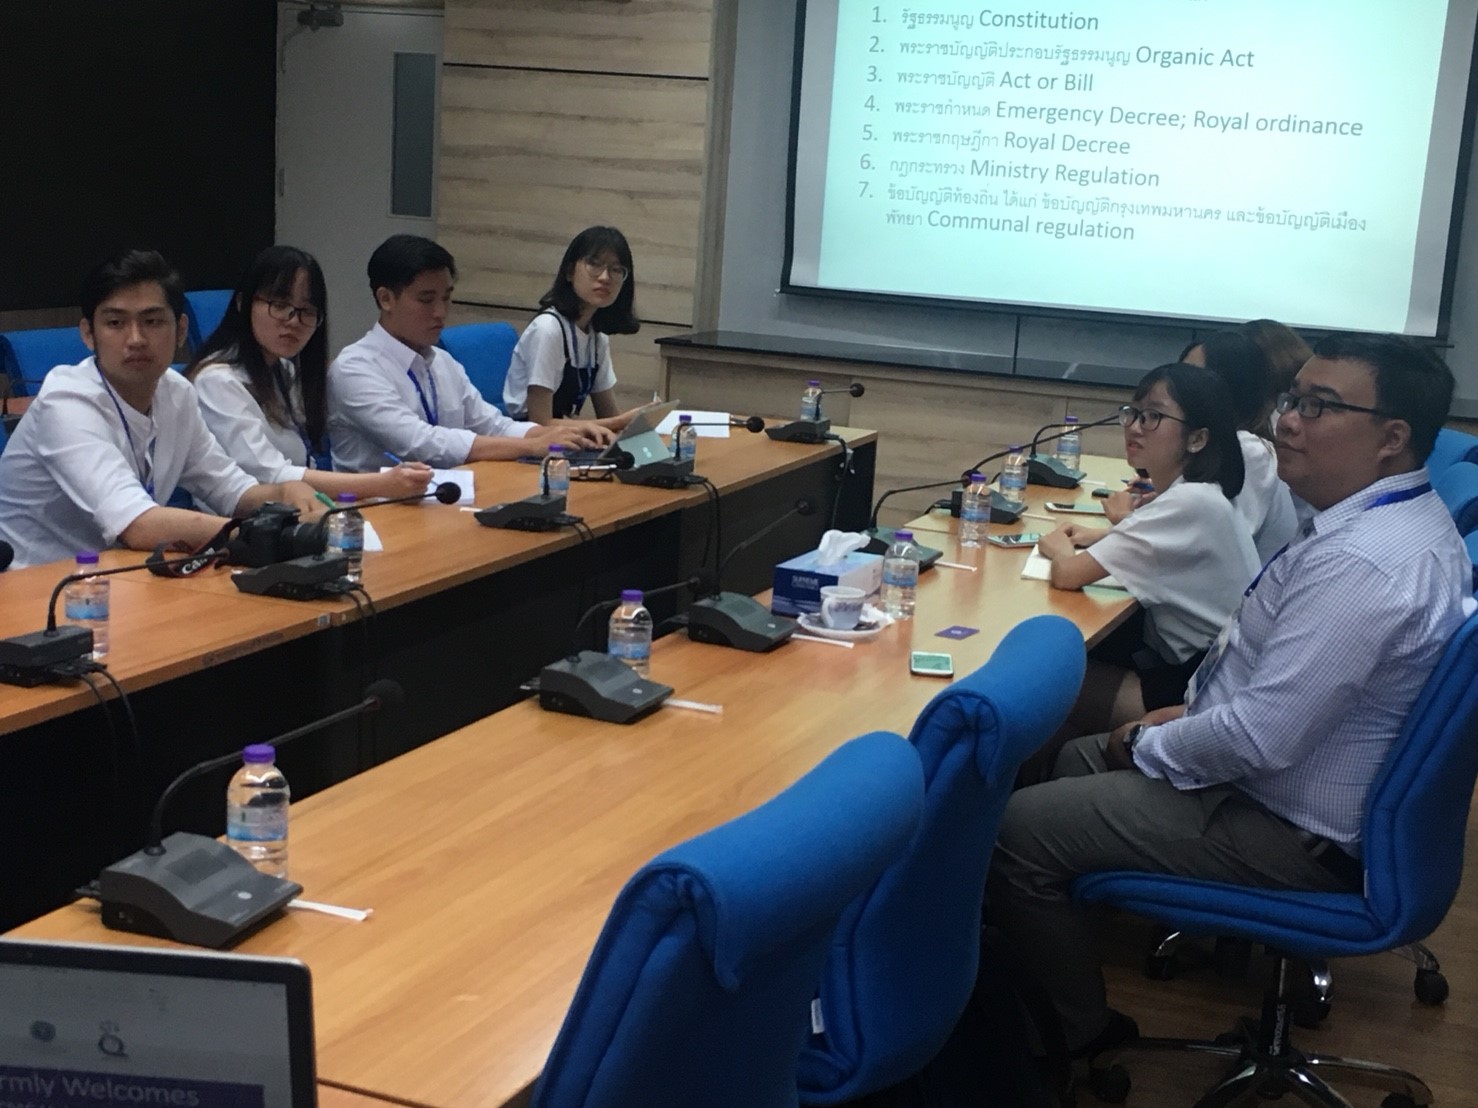 ต้อนรับคณาจารย์และนักศึกษาจากHoChiMinh City University of Law, Vietnam